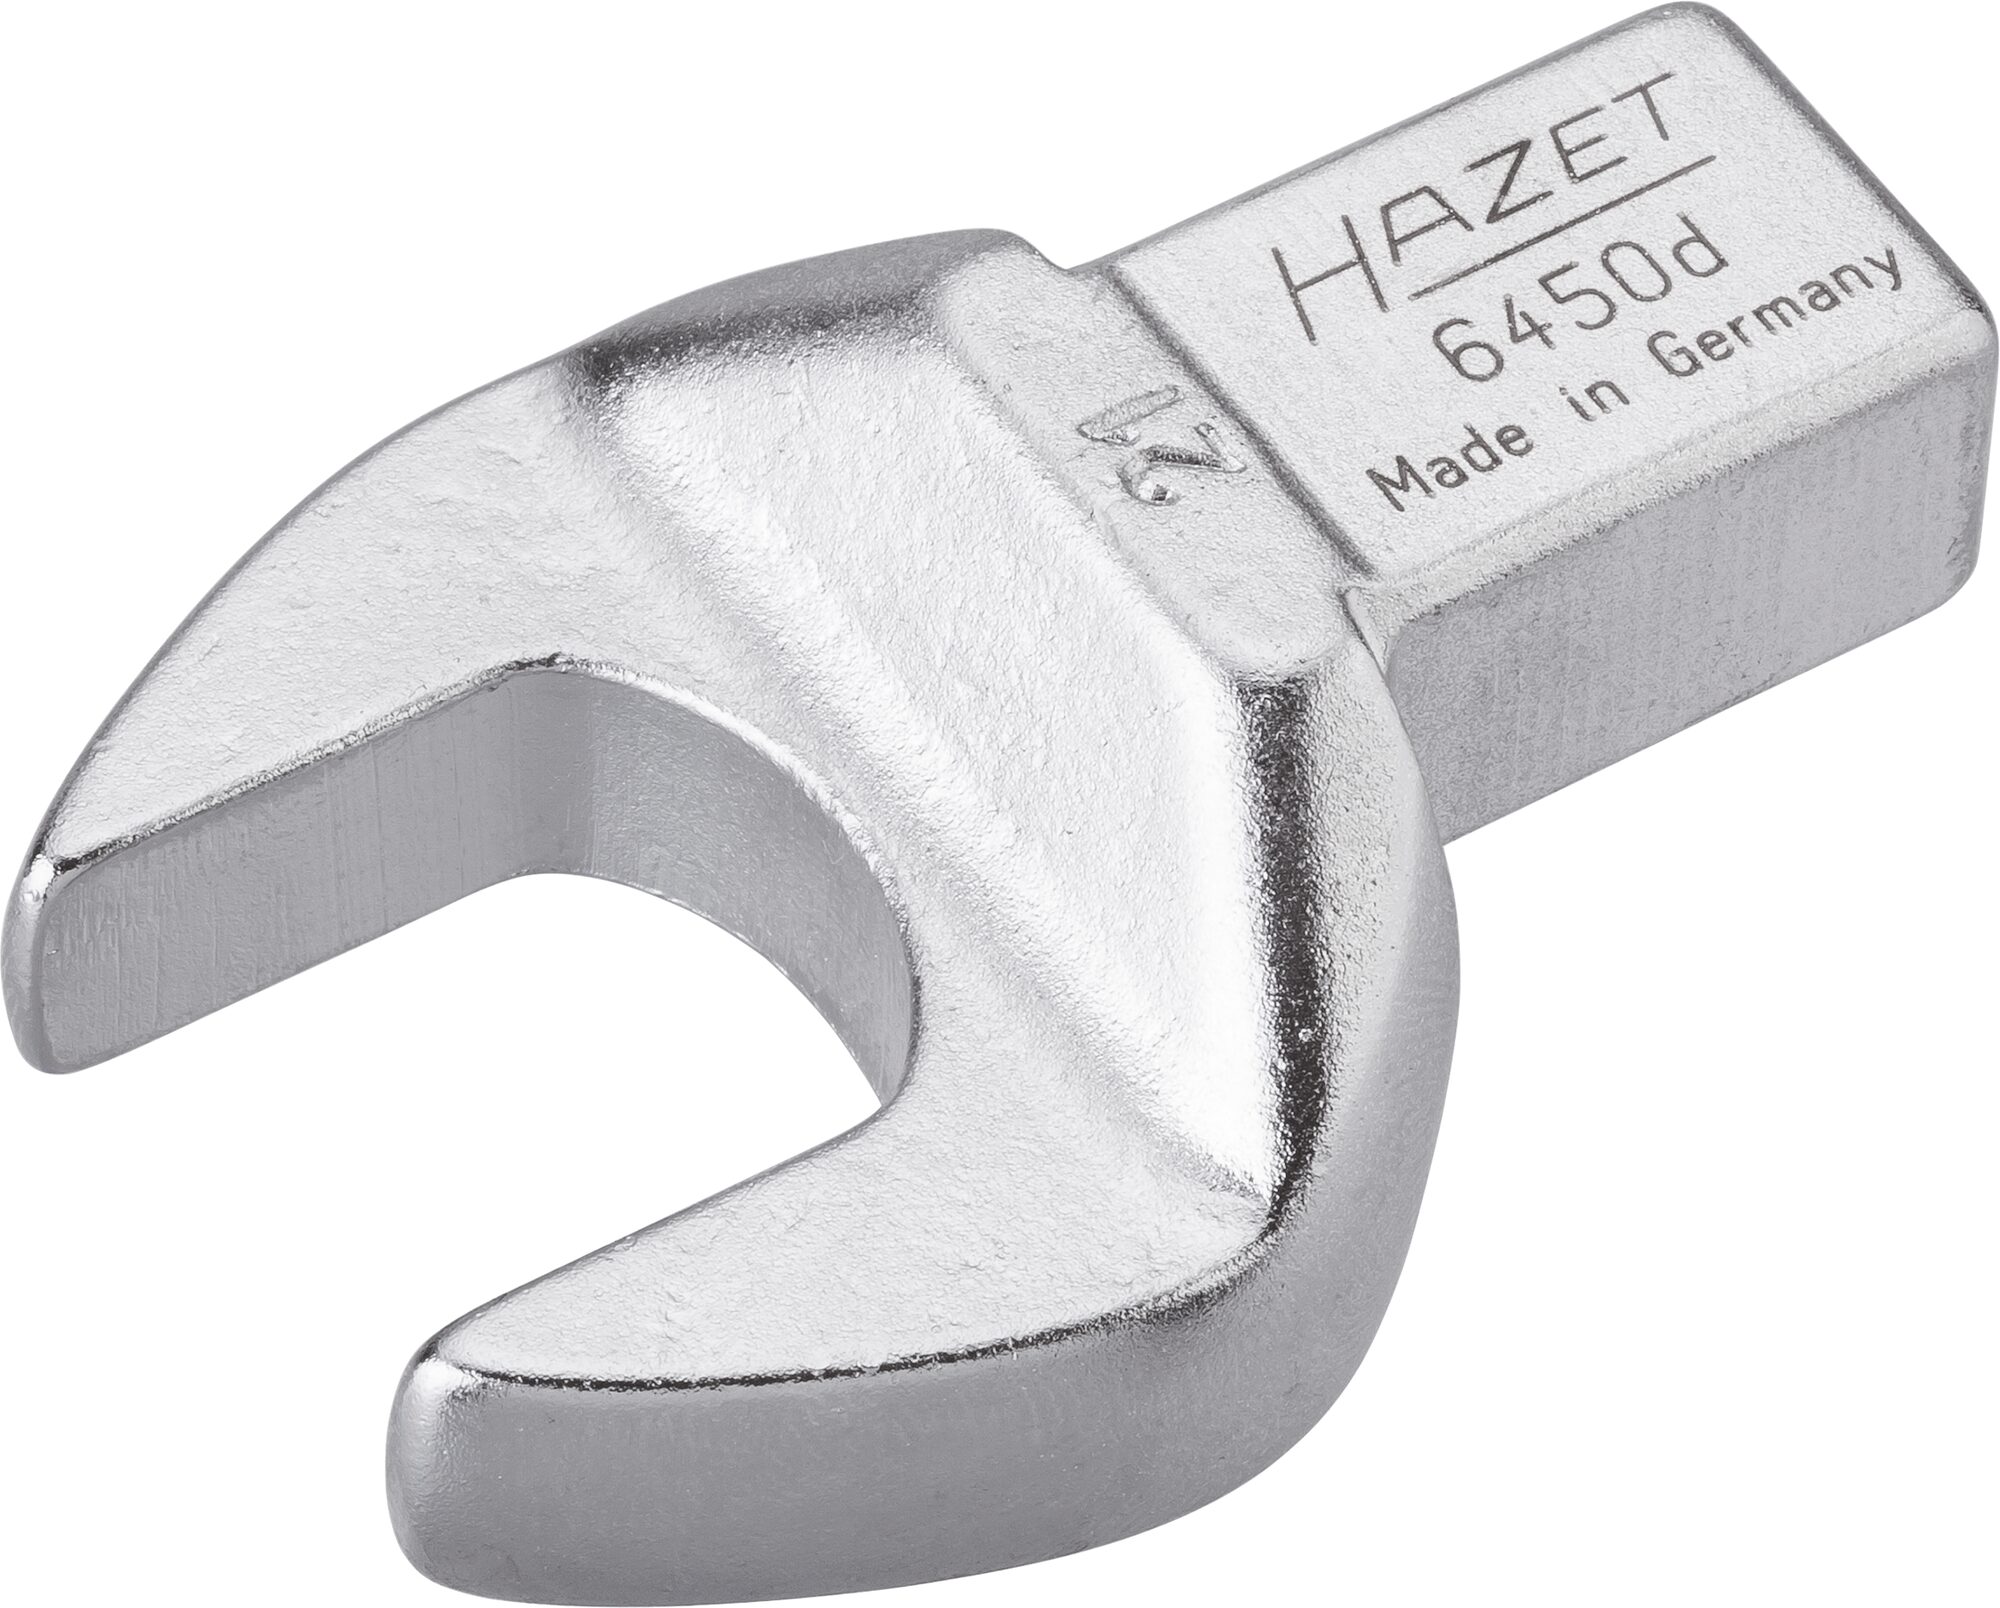 HAZET Einsteck-Maulschlüssel 6450D-21 · Einsteck-Vierkant 14 x 18 mm · Außen Sechskant Profil · 21 mm